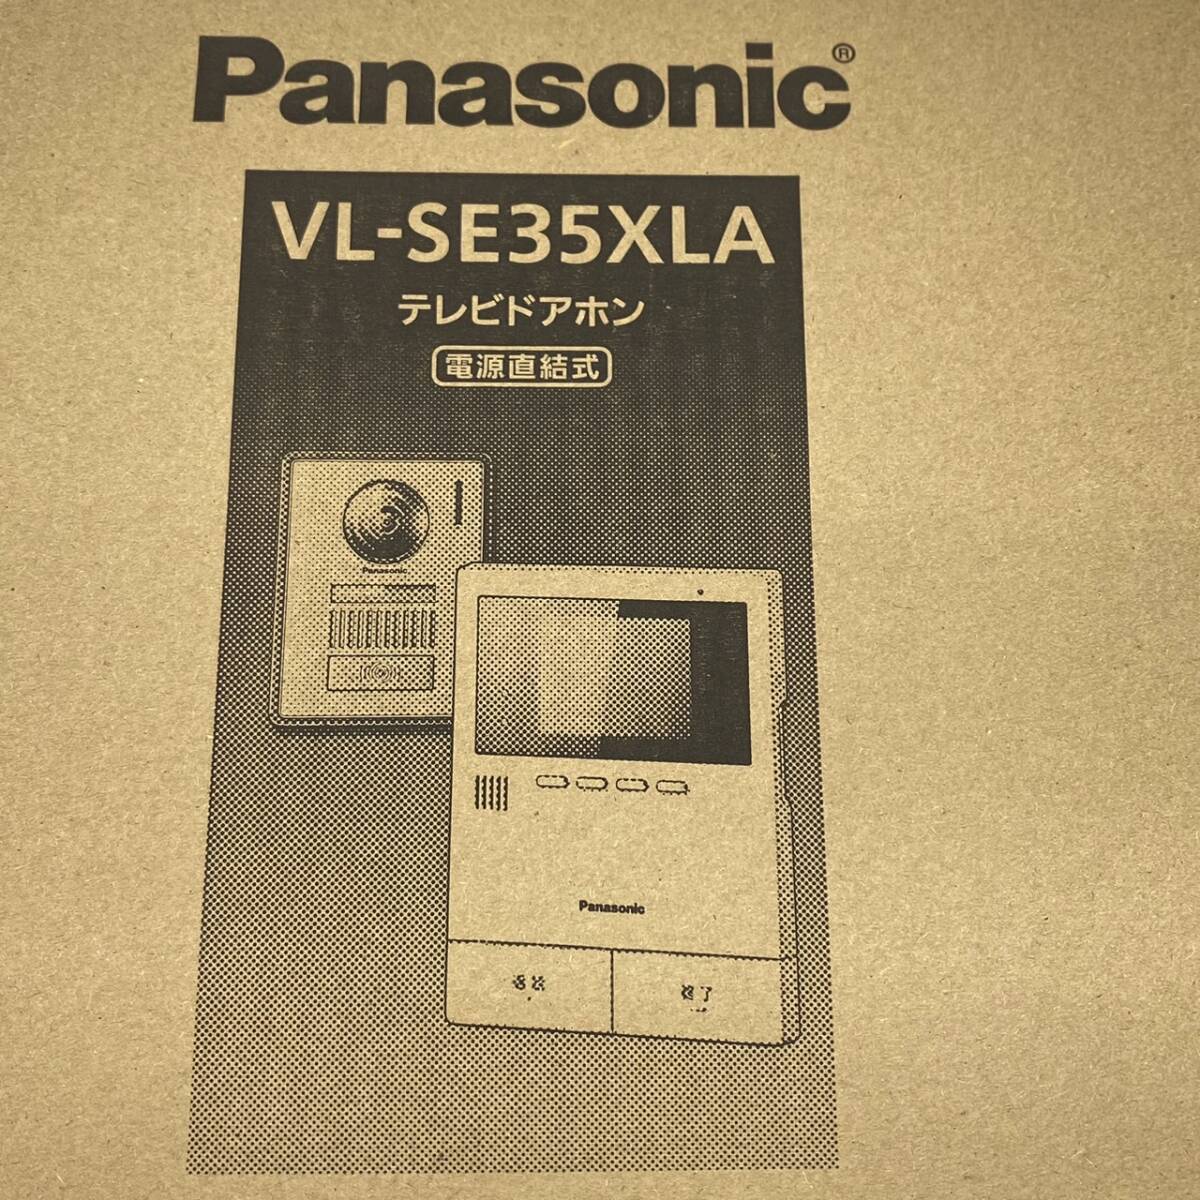 送料無料g30580 Panasonic パナソニック VL-SE35XLA テレビドアホン 電源直結 録画 録音機能付き 防犯 セキュリティ インターホン ドアホンの画像4